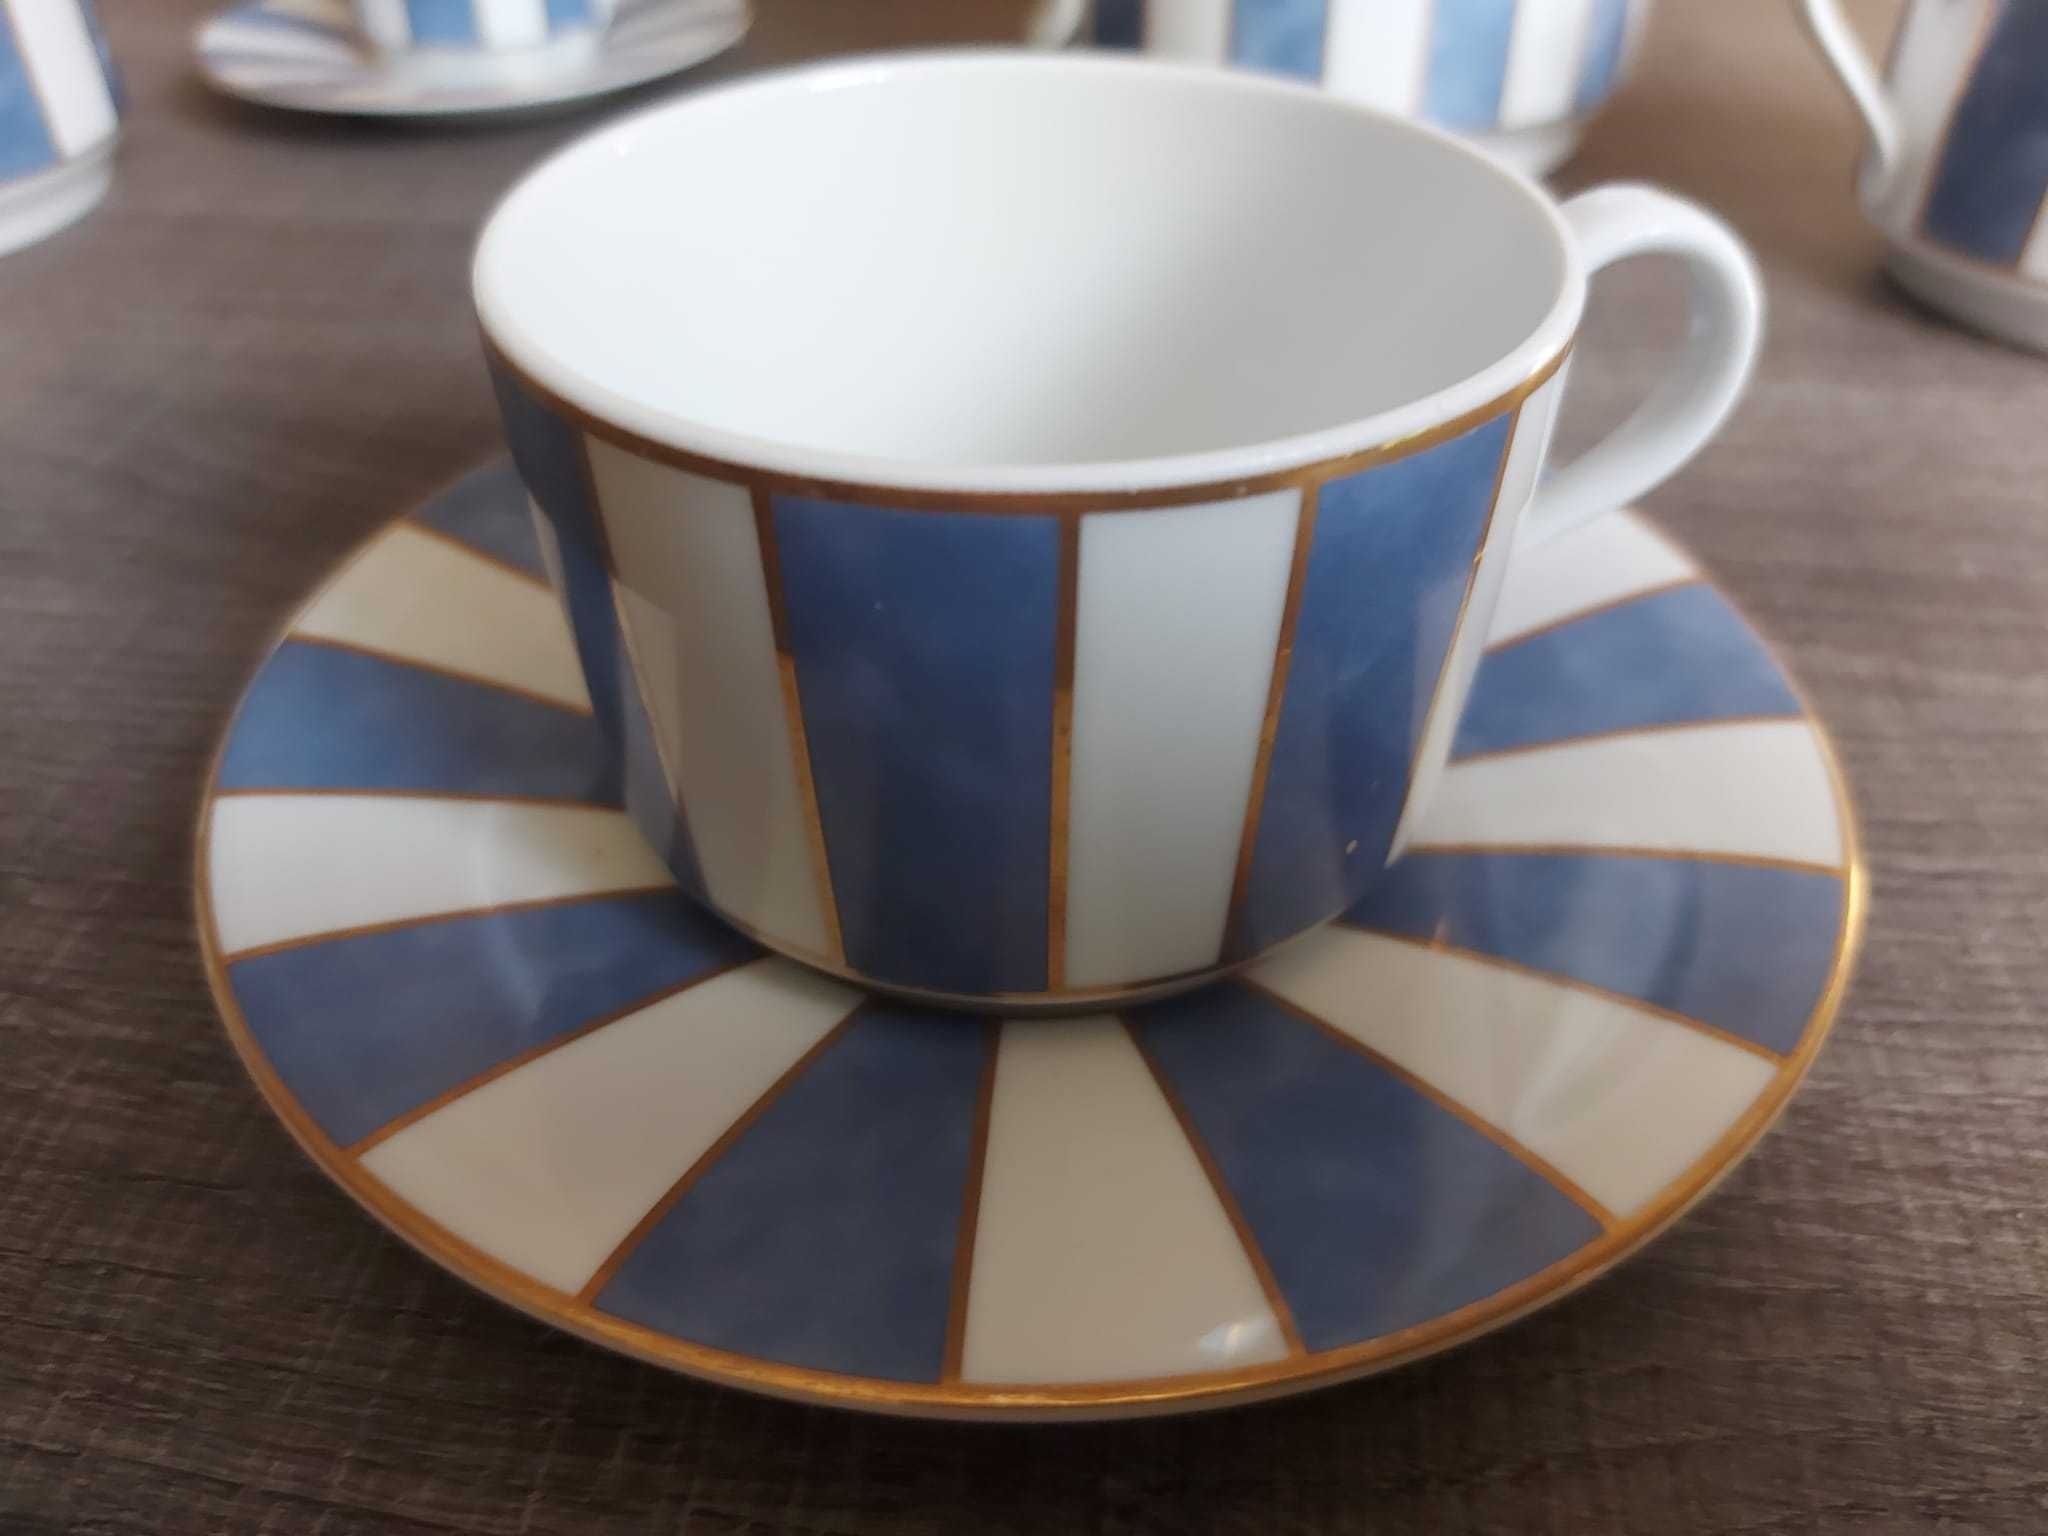 Chávenas de Chá em porcelana